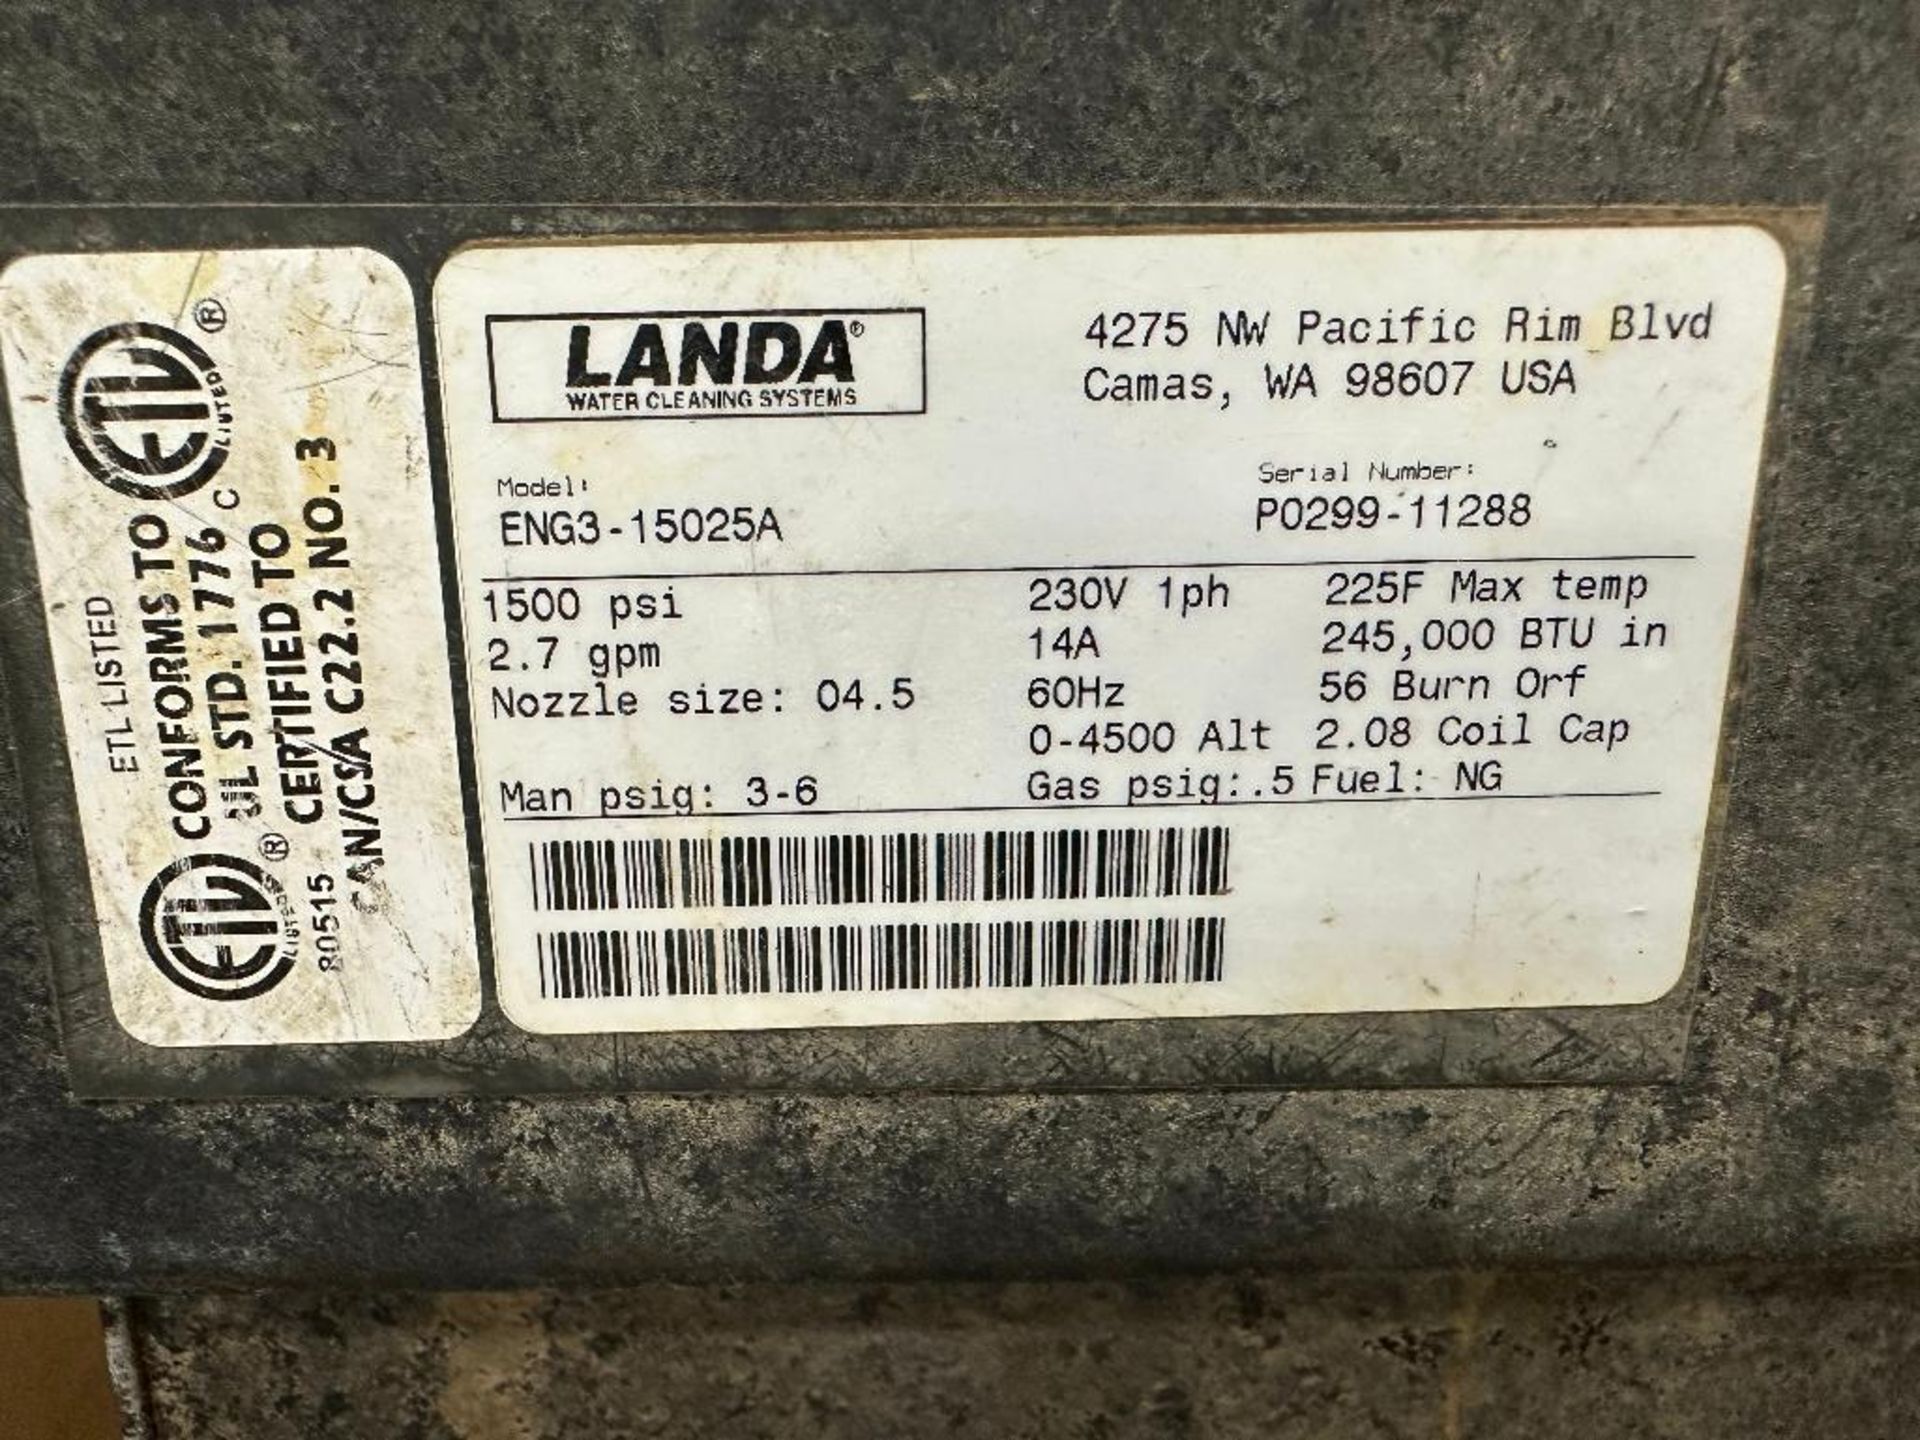 Landa HOT3-30035D Mobile Pressure Washer - Image 11 of 11